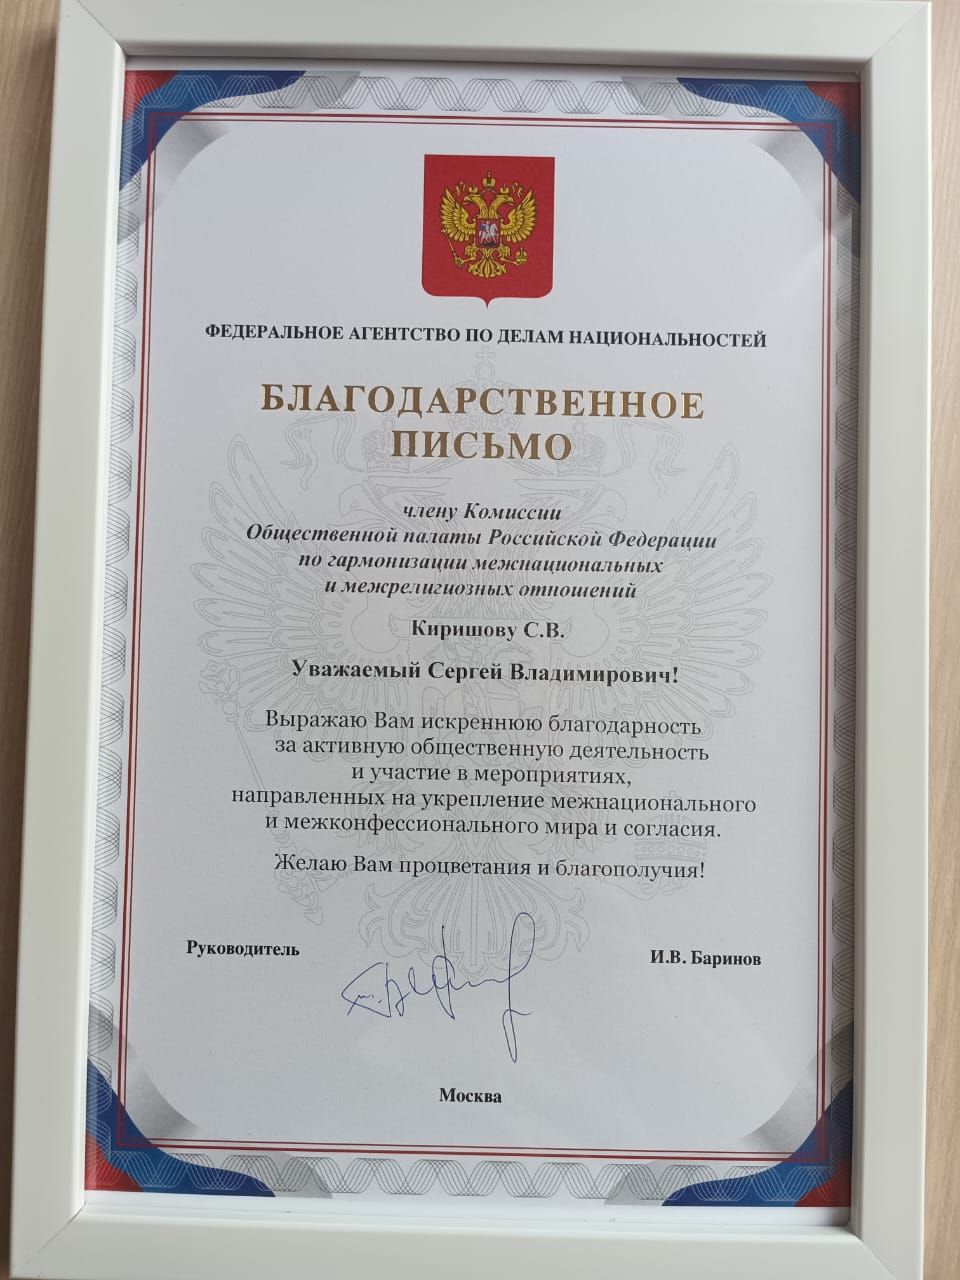 Поздравляем Киришова Сергея Владимировича!